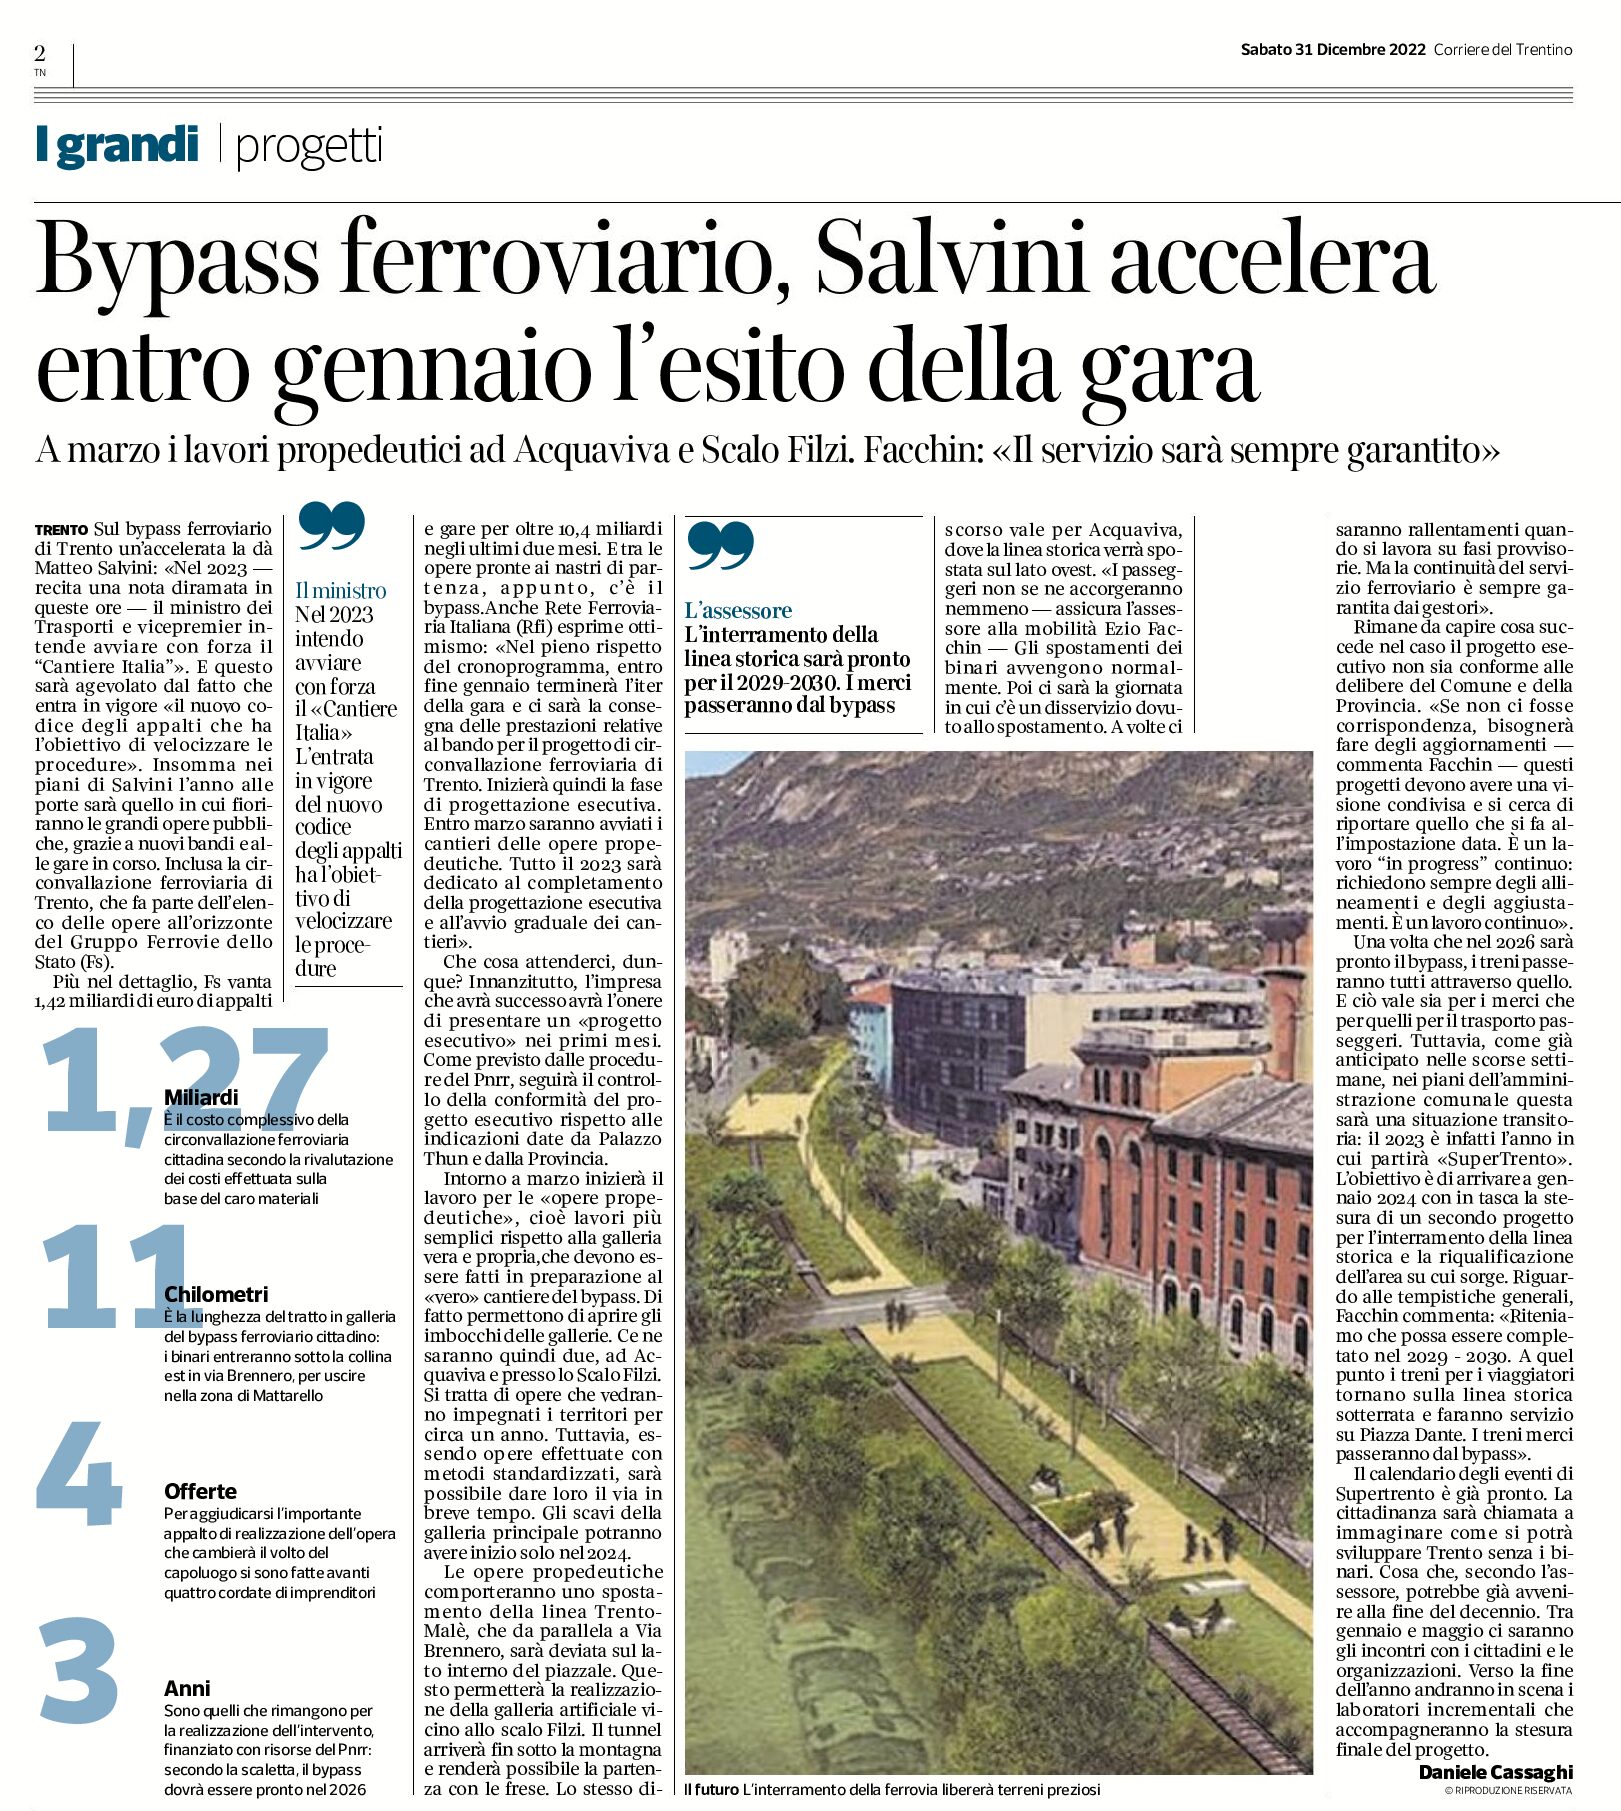 Trento, bypass ferroviario: Salvini accelera. Entro gennaio l’esito della gara